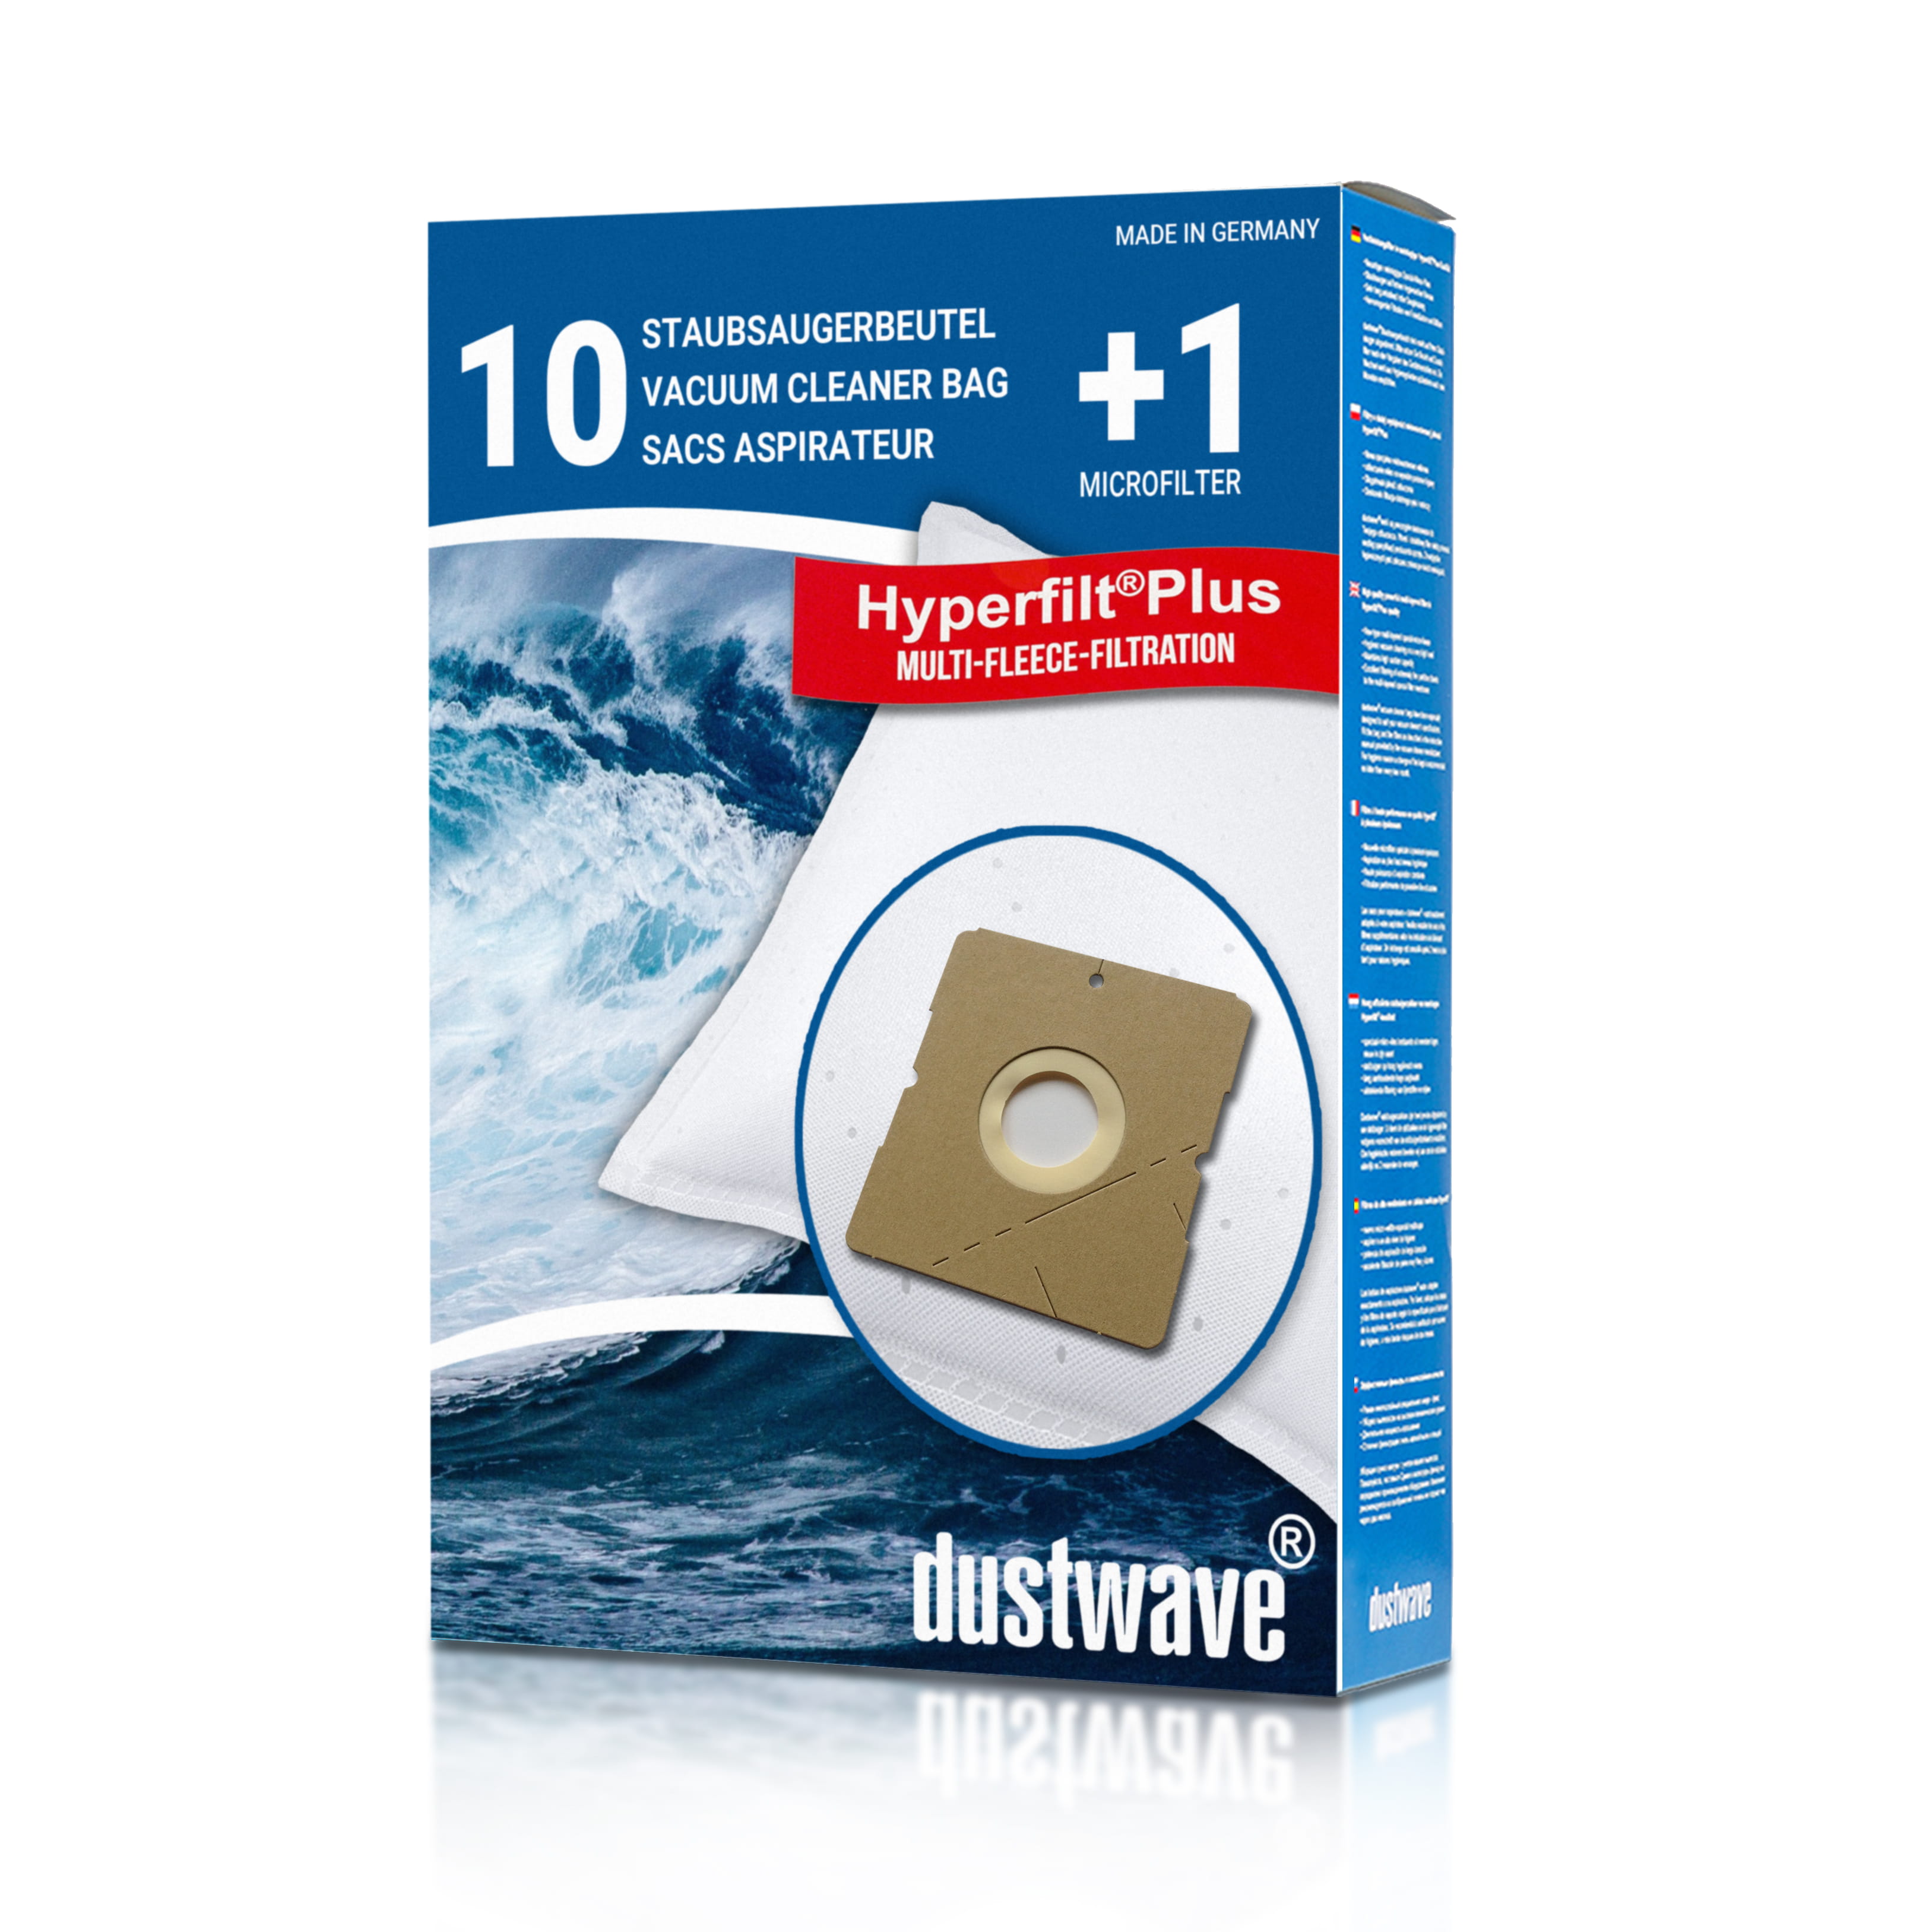 Dustwave® 10 Staubsaugerbeutel für Hoover S9040 011 DRY - hocheffizient, mehrlagiges Mikrovlies mit Hygieneverschluss - Made in Germany